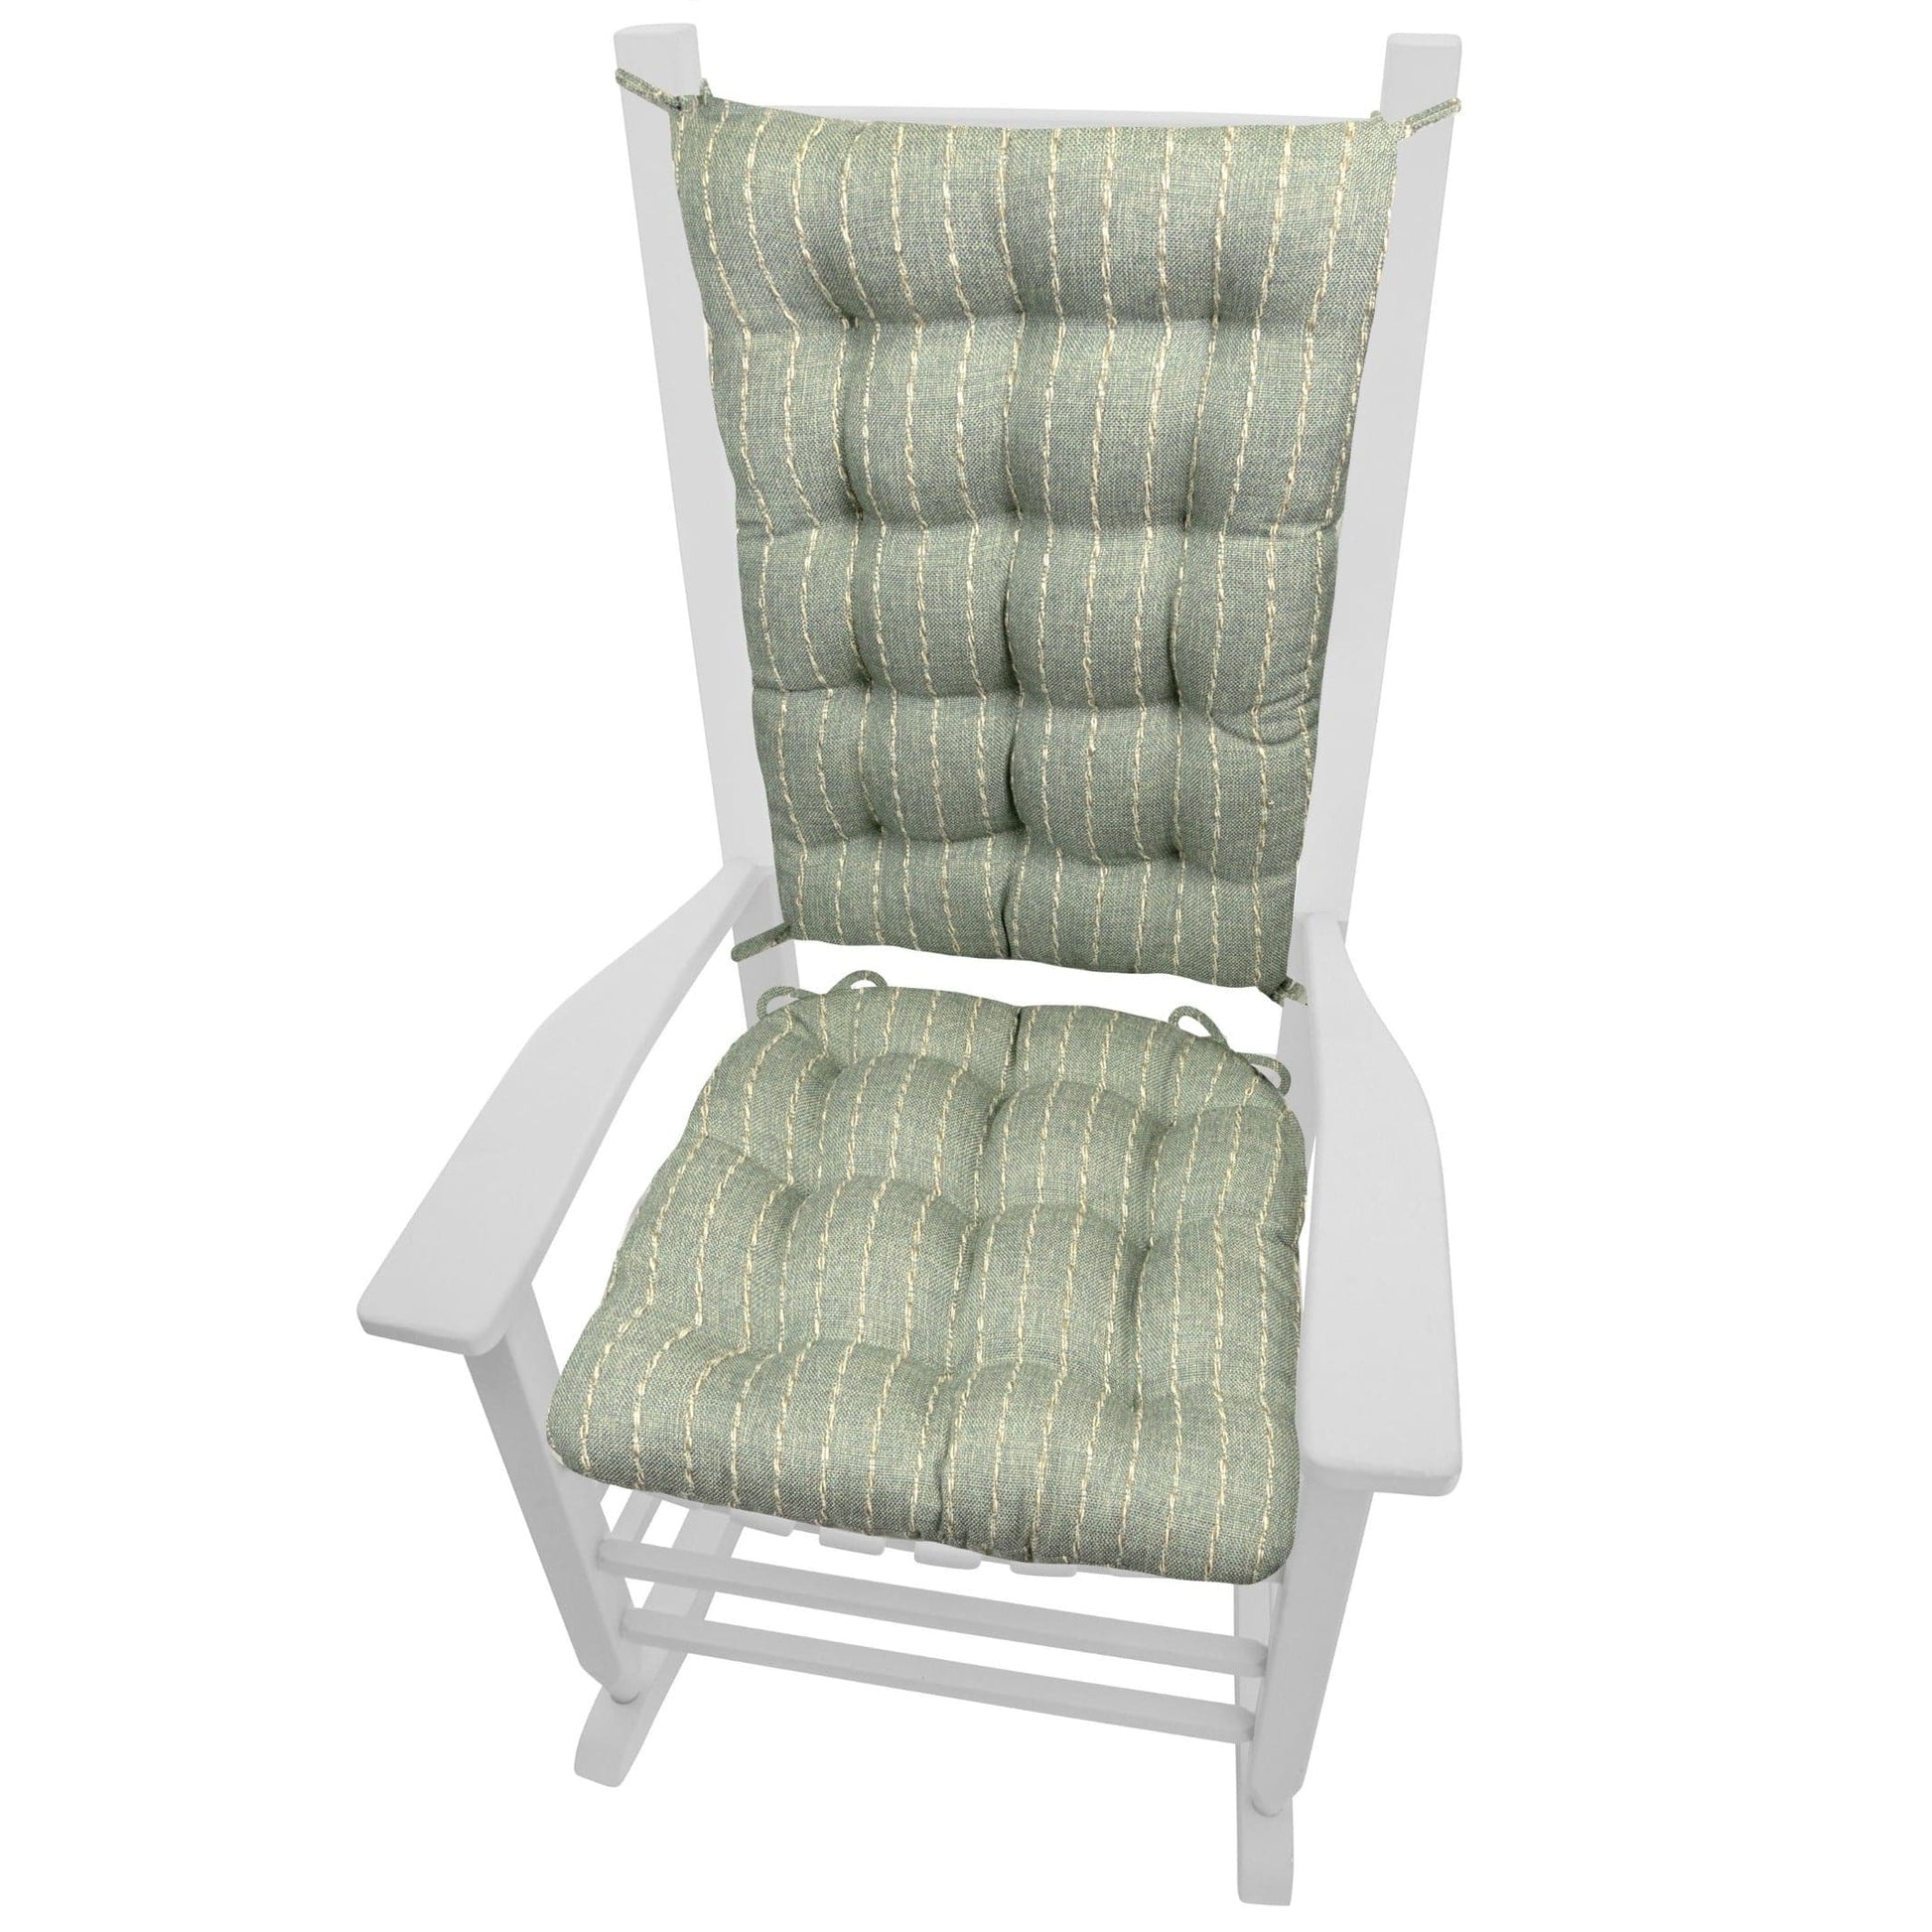 Avante Spa Green Teal Striped Rocking Chair Cushions - Latex Foam - Barnett Home Décor